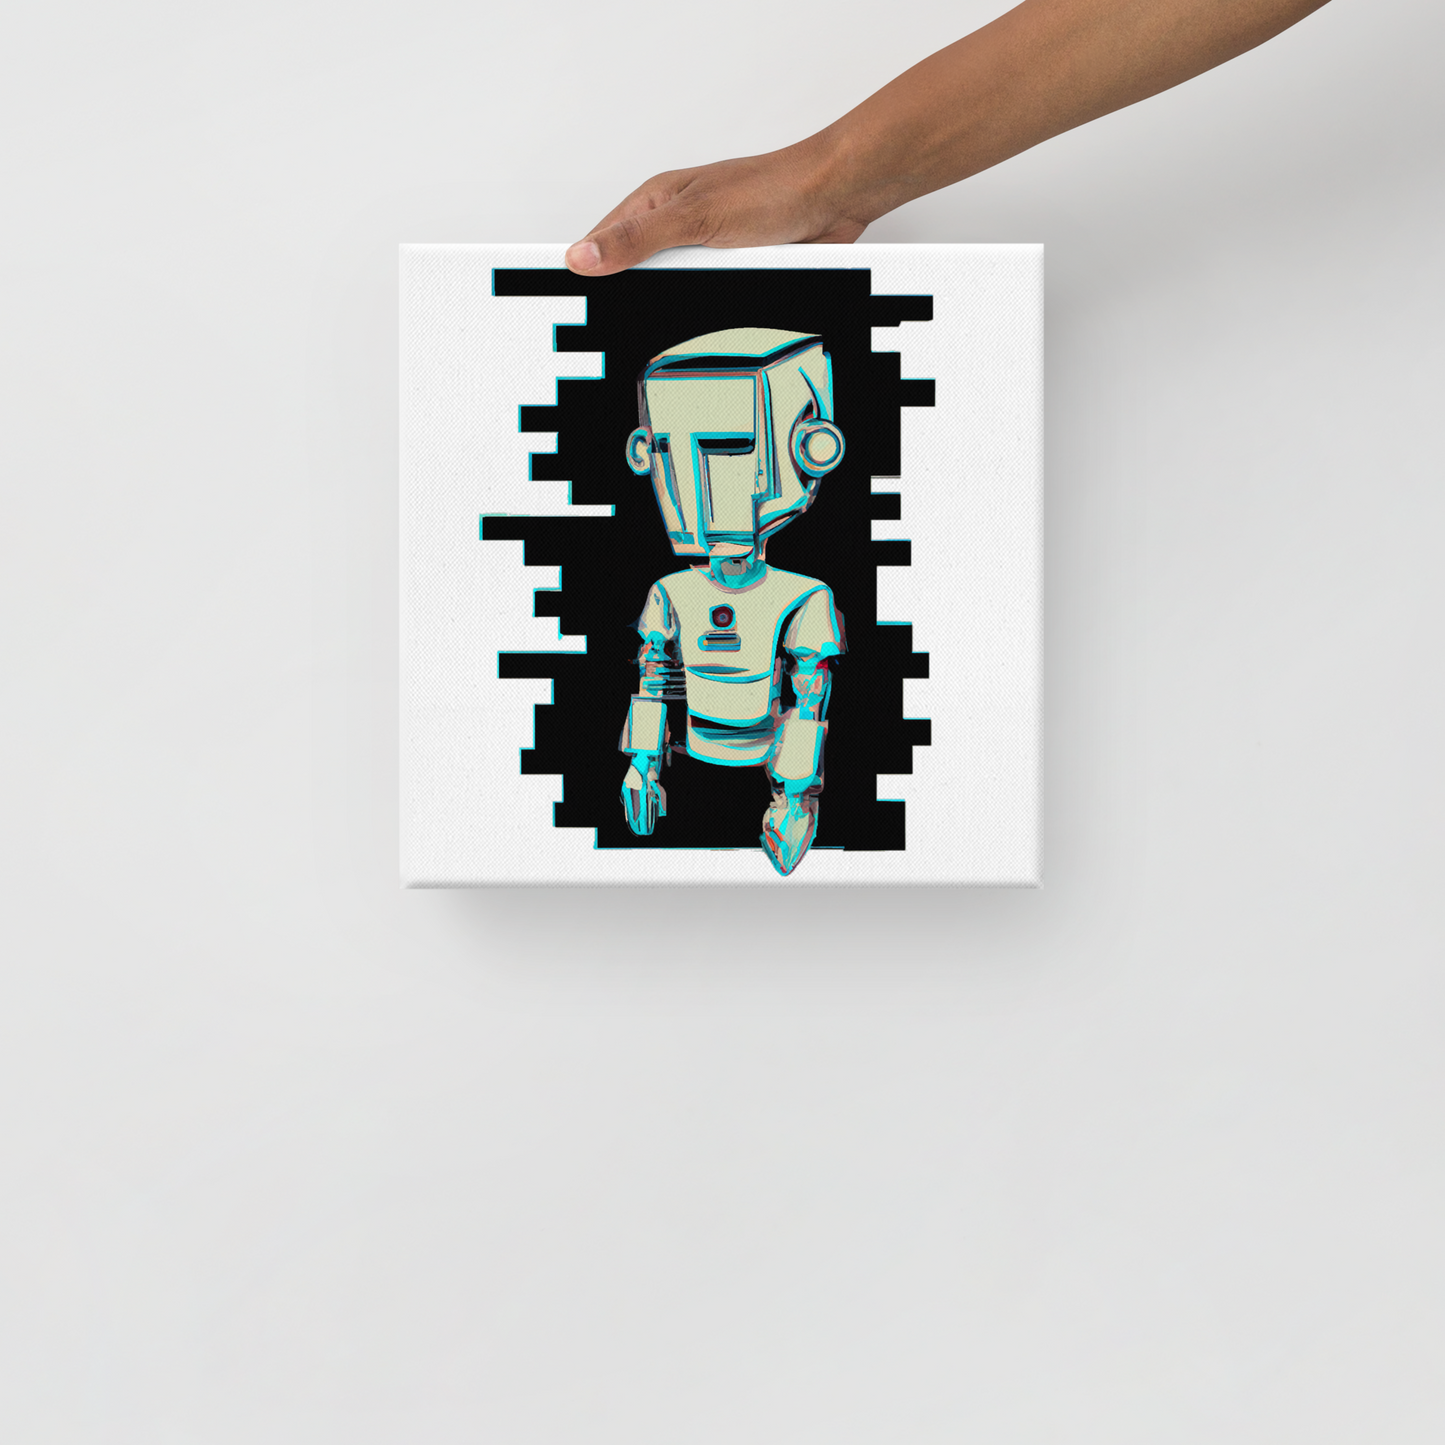 SOULED OUT "Sad Robot 1" Canvas